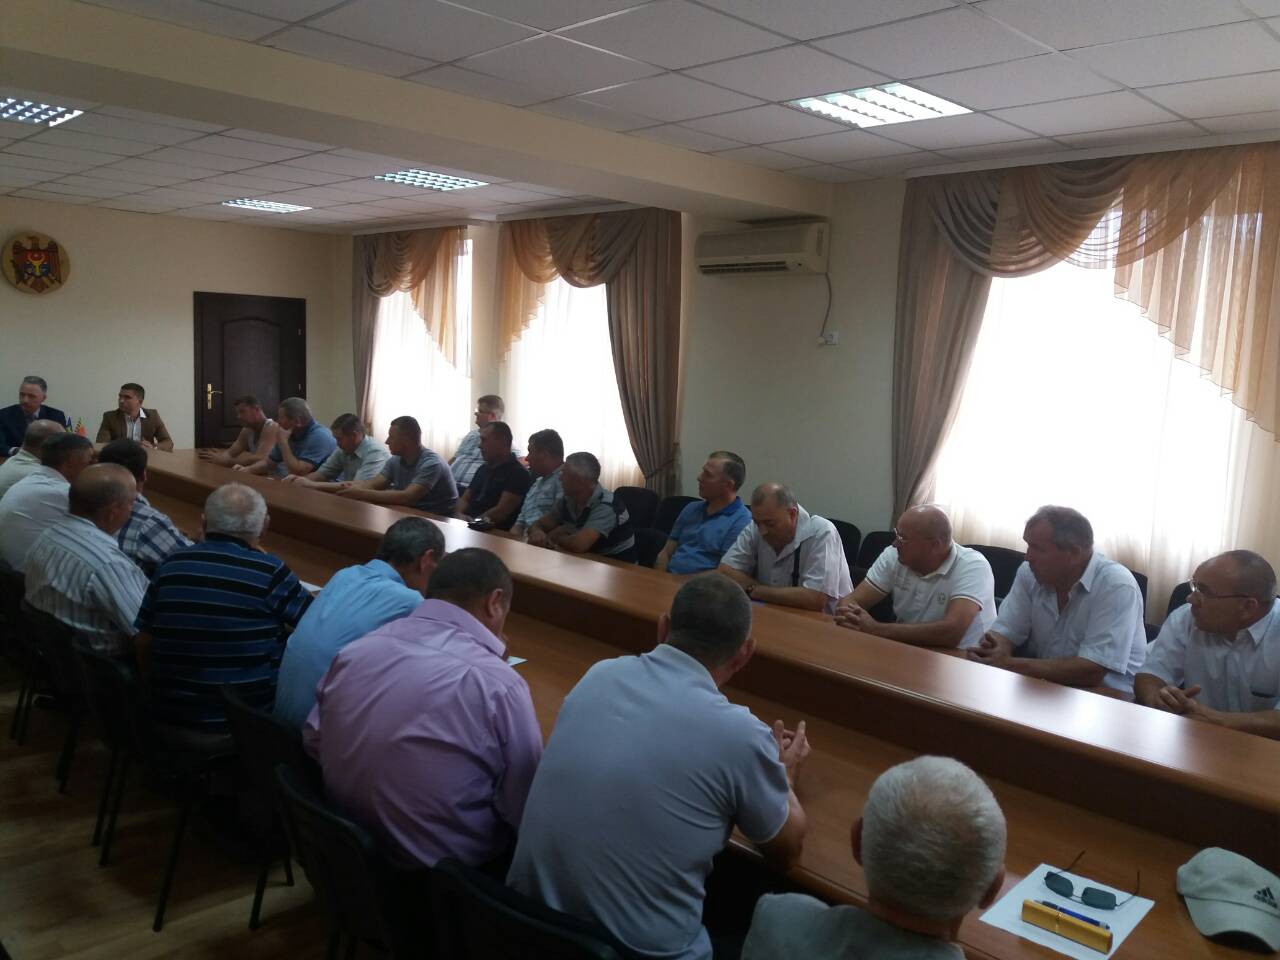 Встреча председателя Союза офицеров РМ (СОРМ) с руководством района и ветеранами силовых структур района Басарабяска